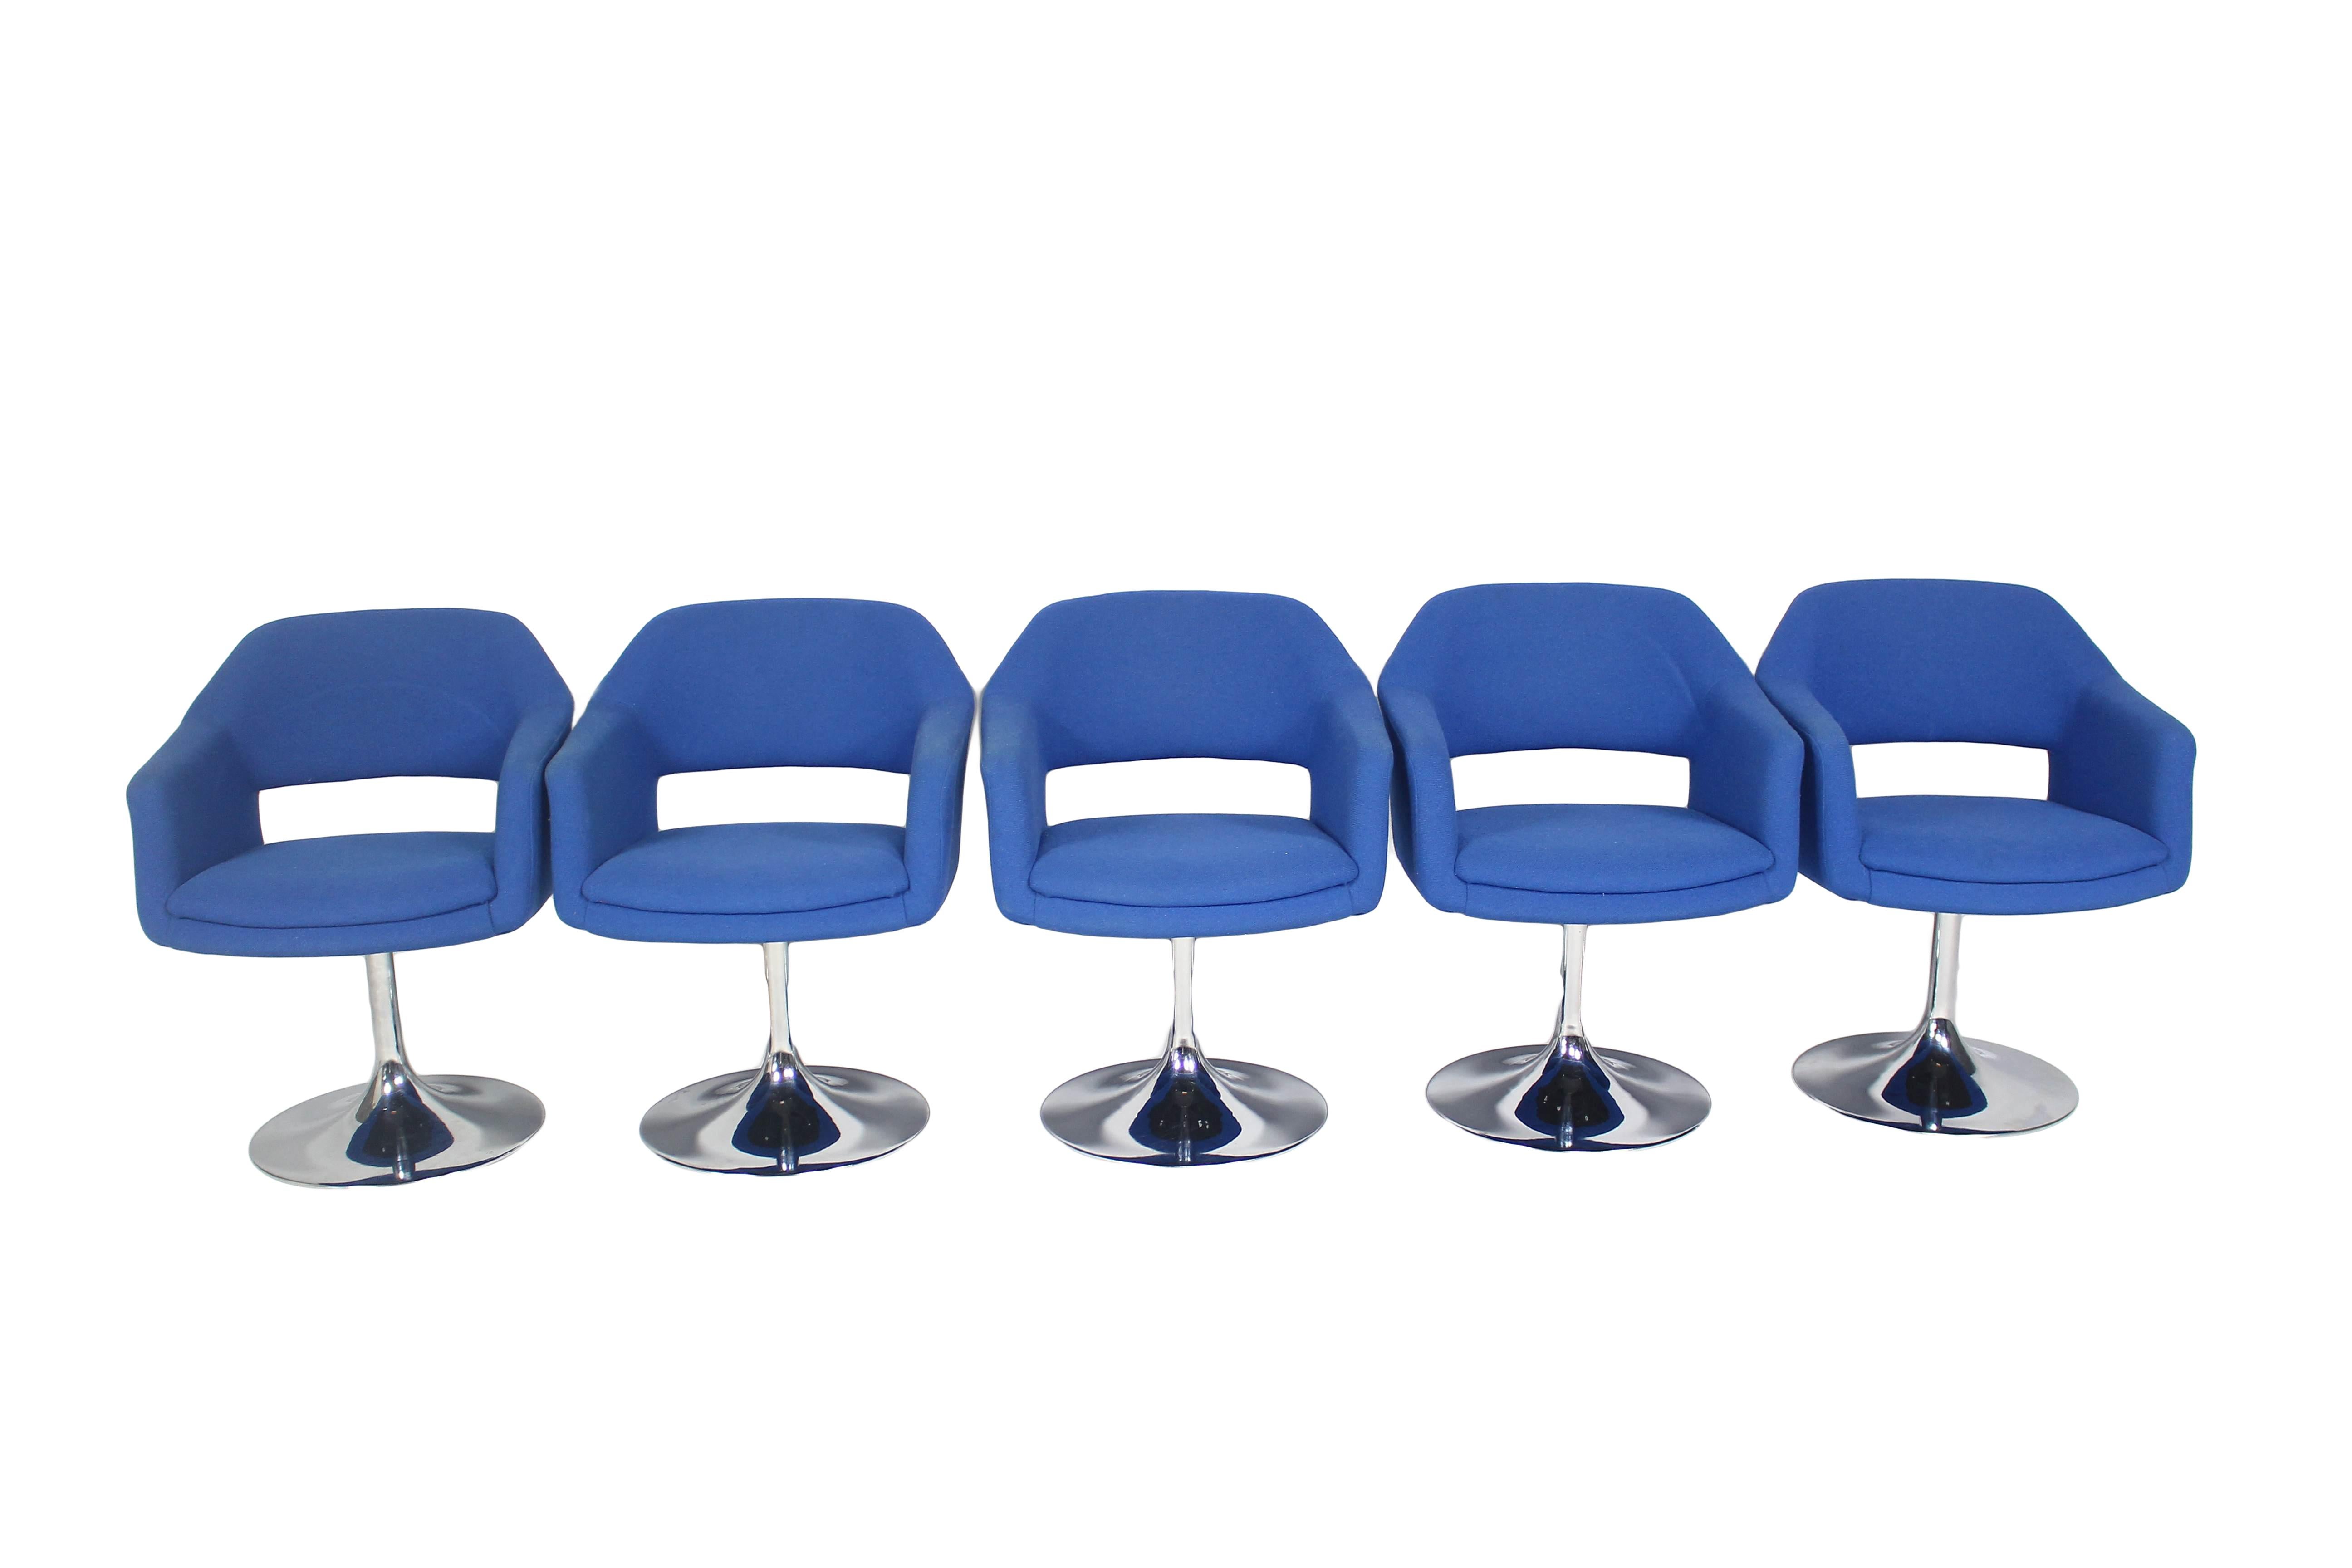 Ensemble de 5 chaises pivotantes modèle Largo.
Fabriqué par Johanson Design/One en Suède. 
Bon état.
Prix pour un ensemble de 5 chaises.